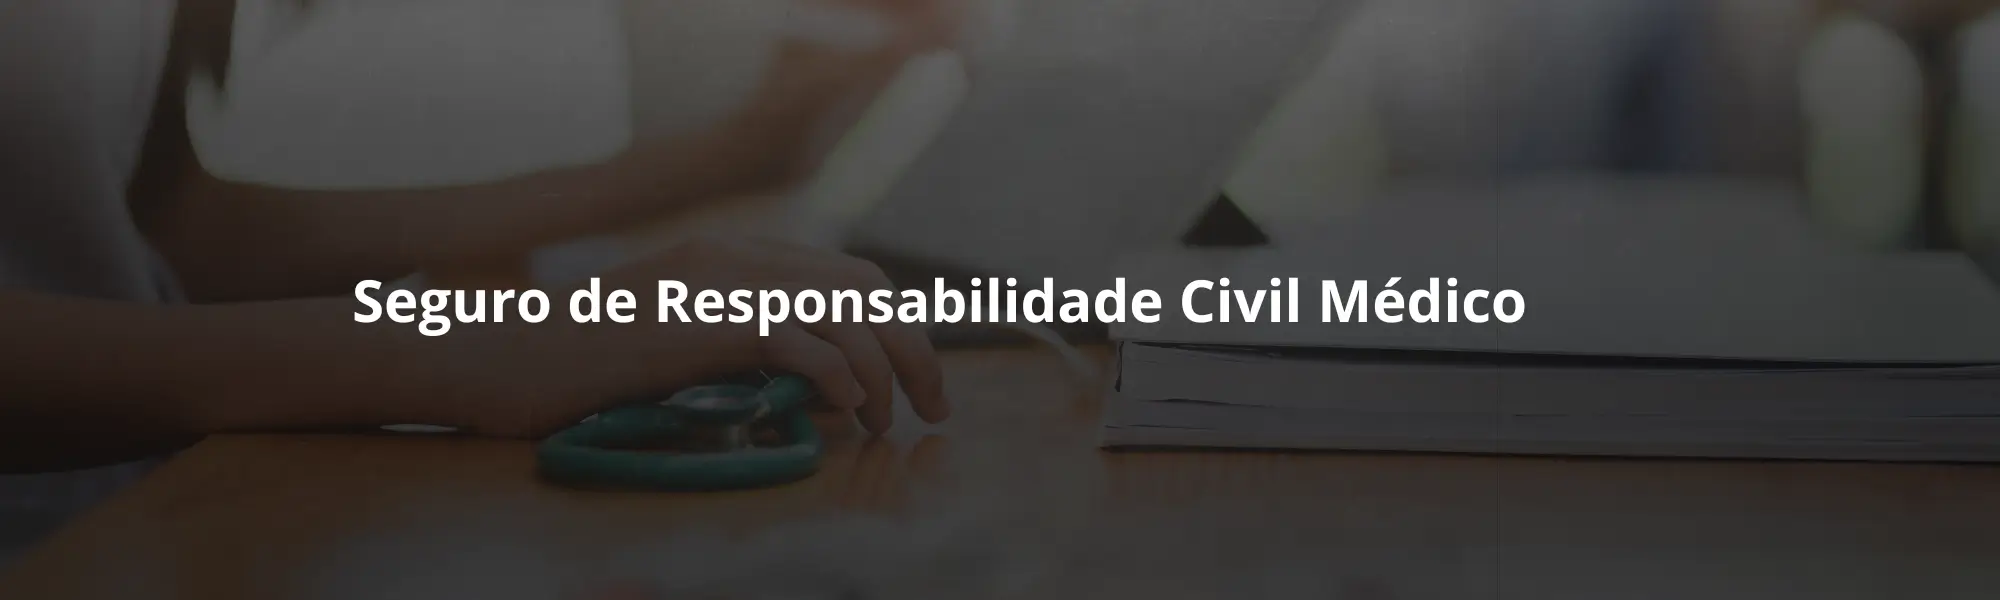 Seguro de Responsabilidade Civil Médico (2)